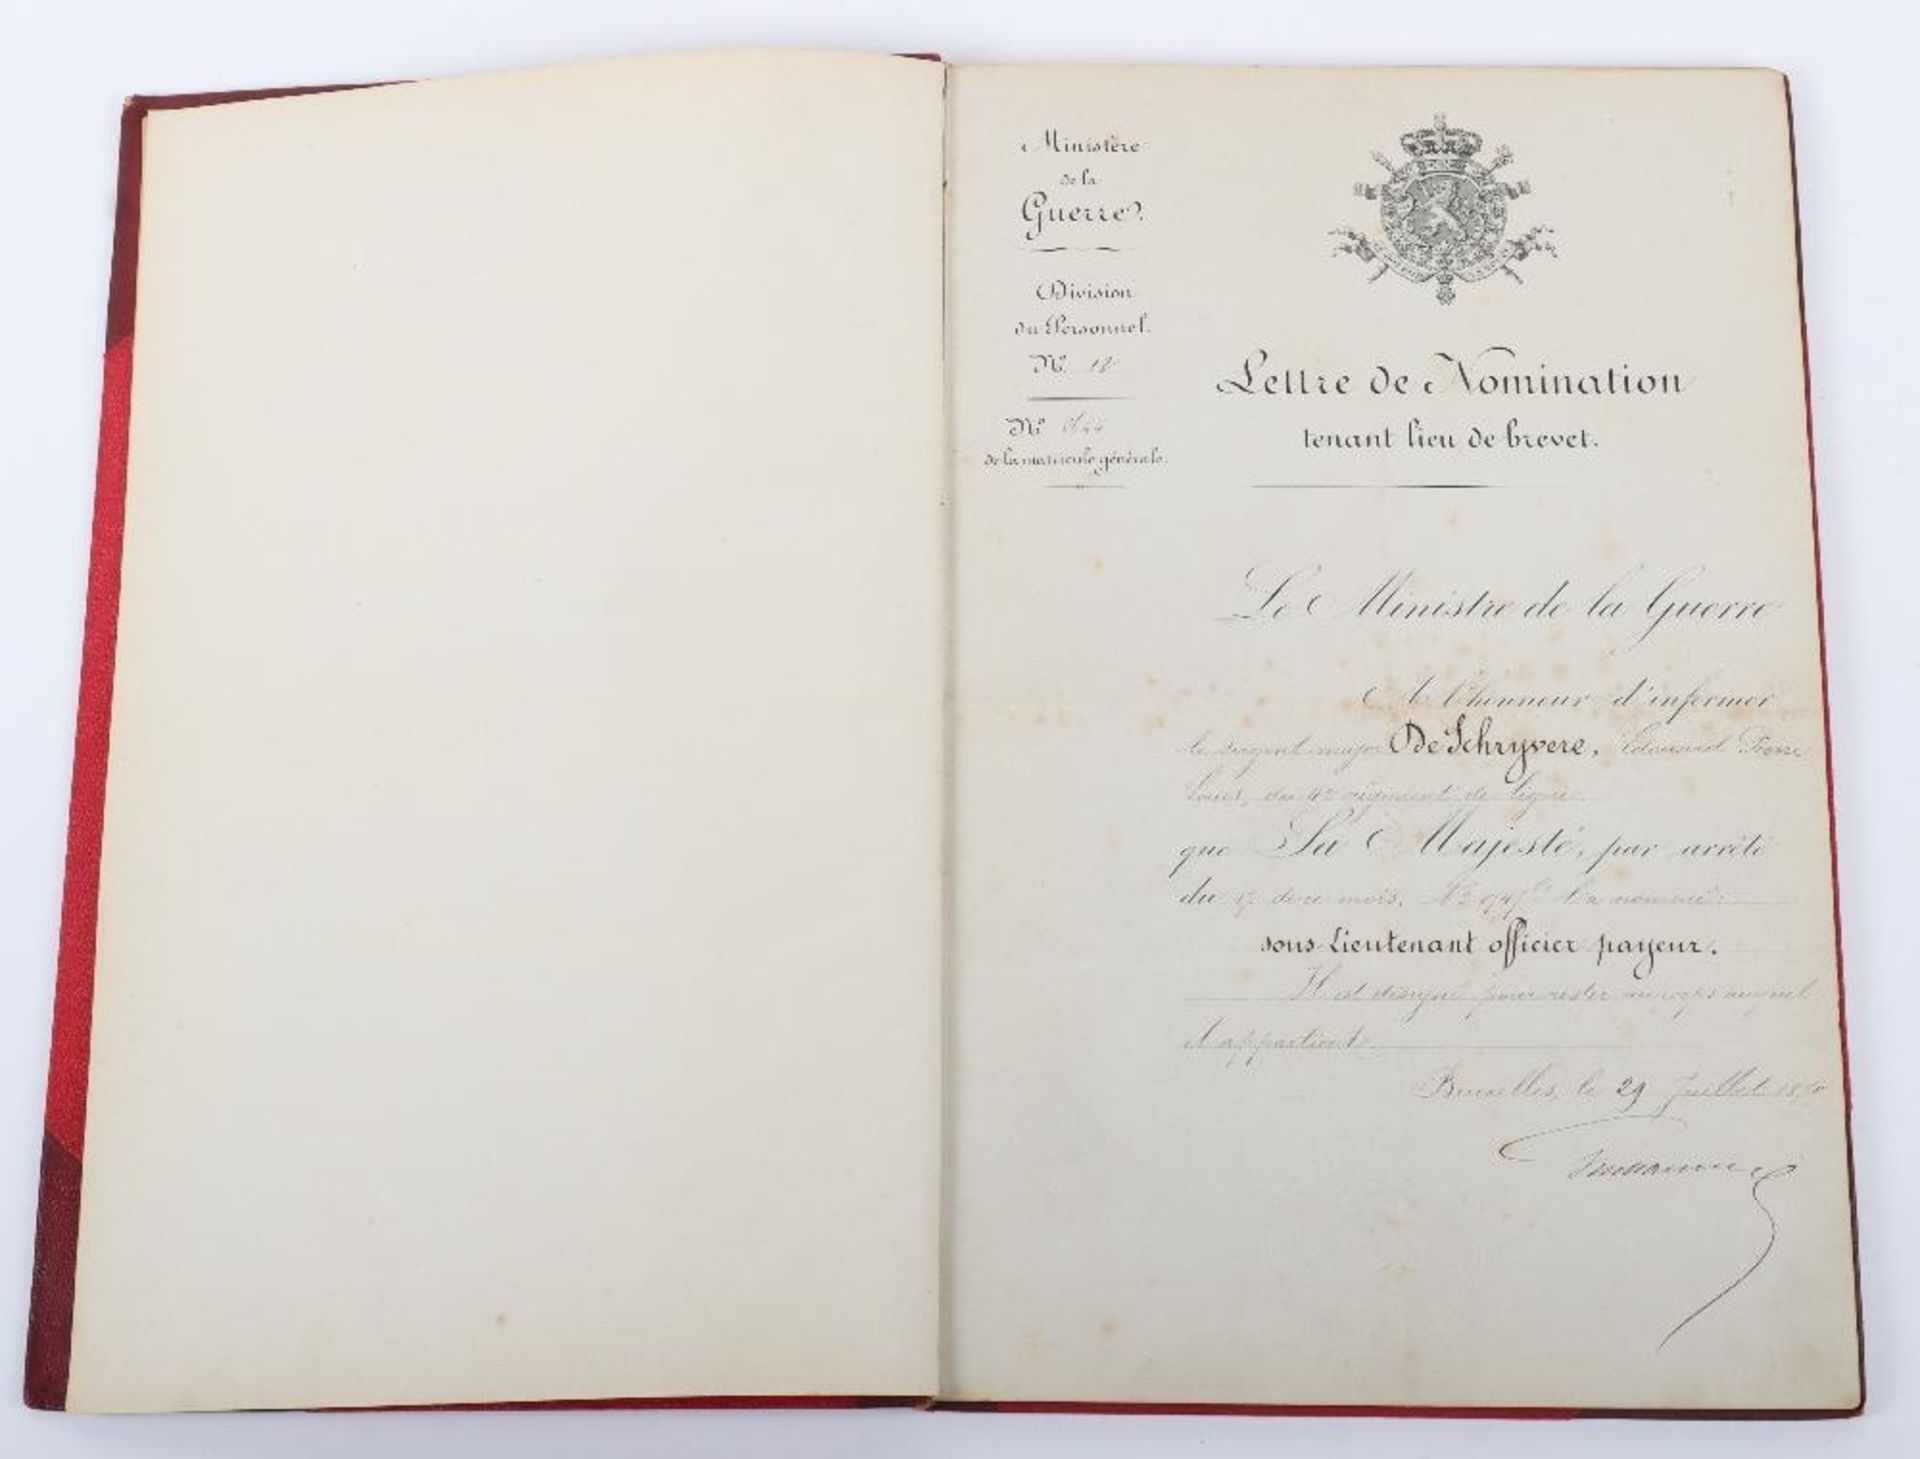 Souvenir de L'Armee 1870-1902”. Bound Collection of Commissions" etc to Capitaine Edward Pierre Lou